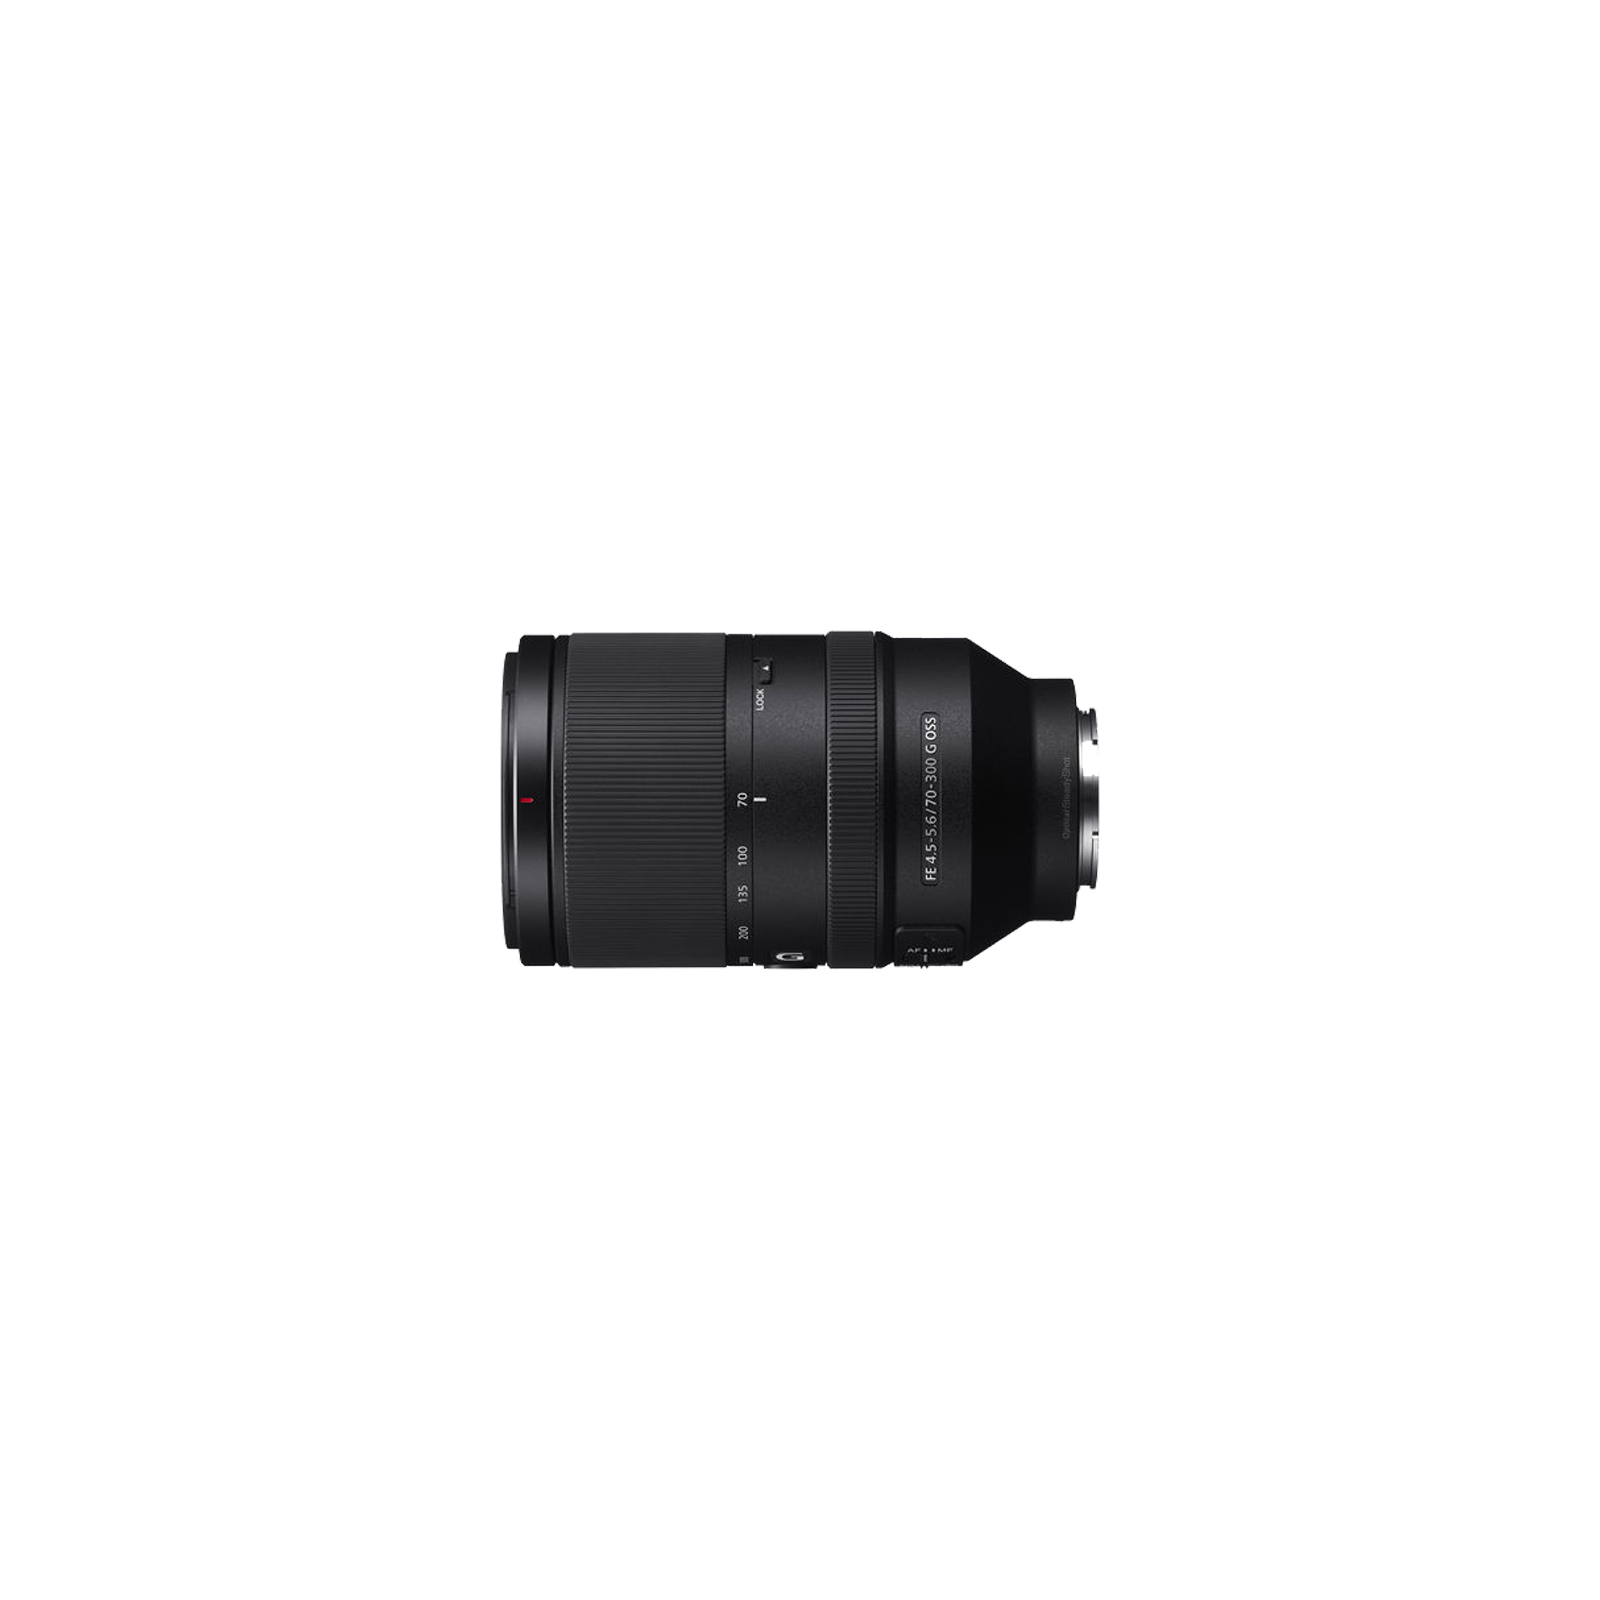 Об'єктив Sony 70-300mm, f/4.5-5.6 G OSS для камер NEX FF (SEL70300G.SYX) зображення 3